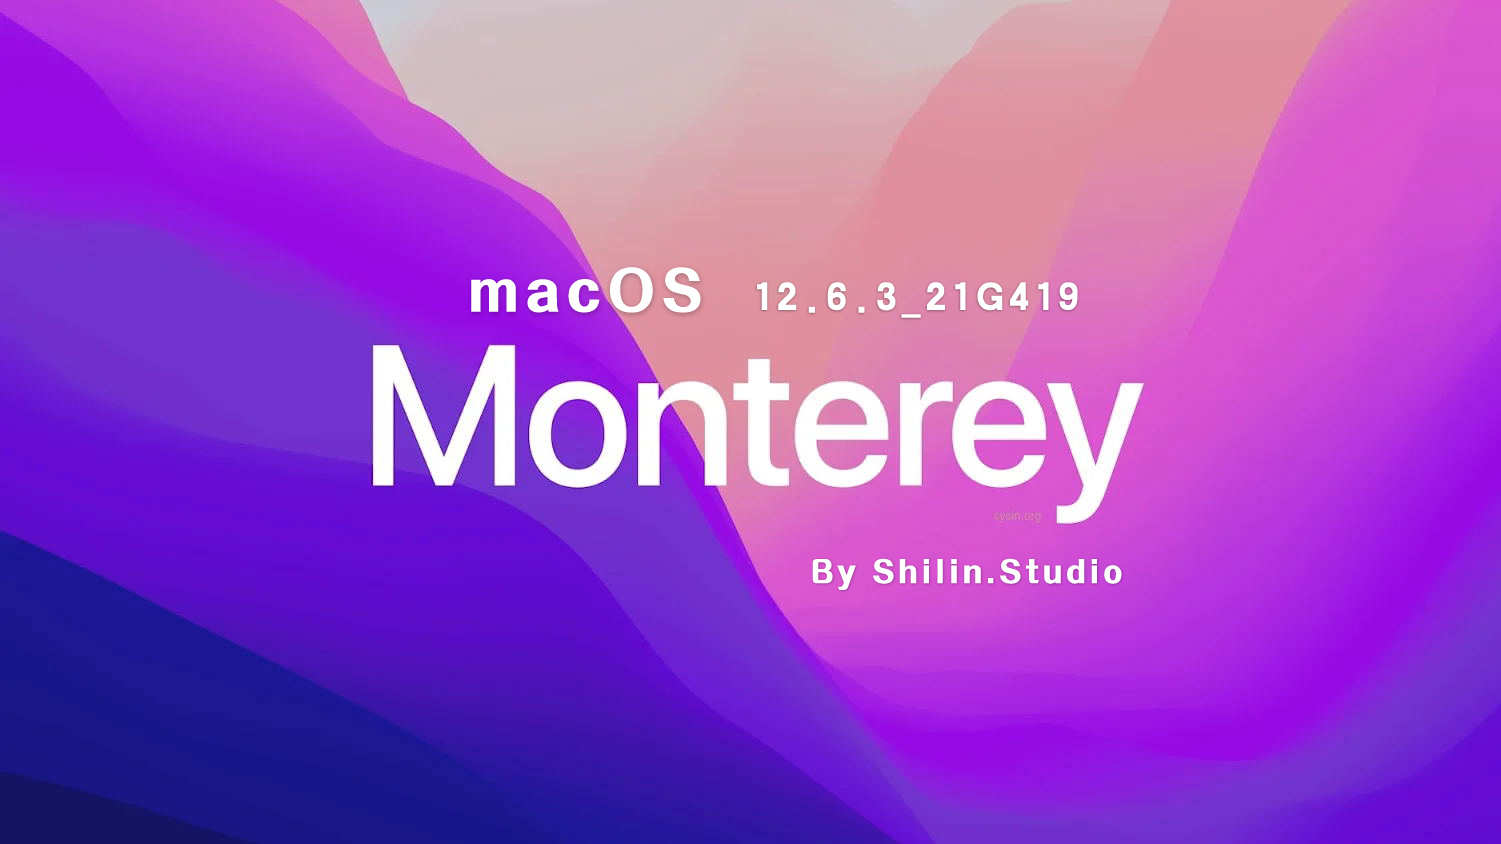 [macOS]macOS_Monterey_12.6.3_21G419_For_Shilin.Studio.iso可引导可虚拟机安装镜像包（已修复引导并优化）